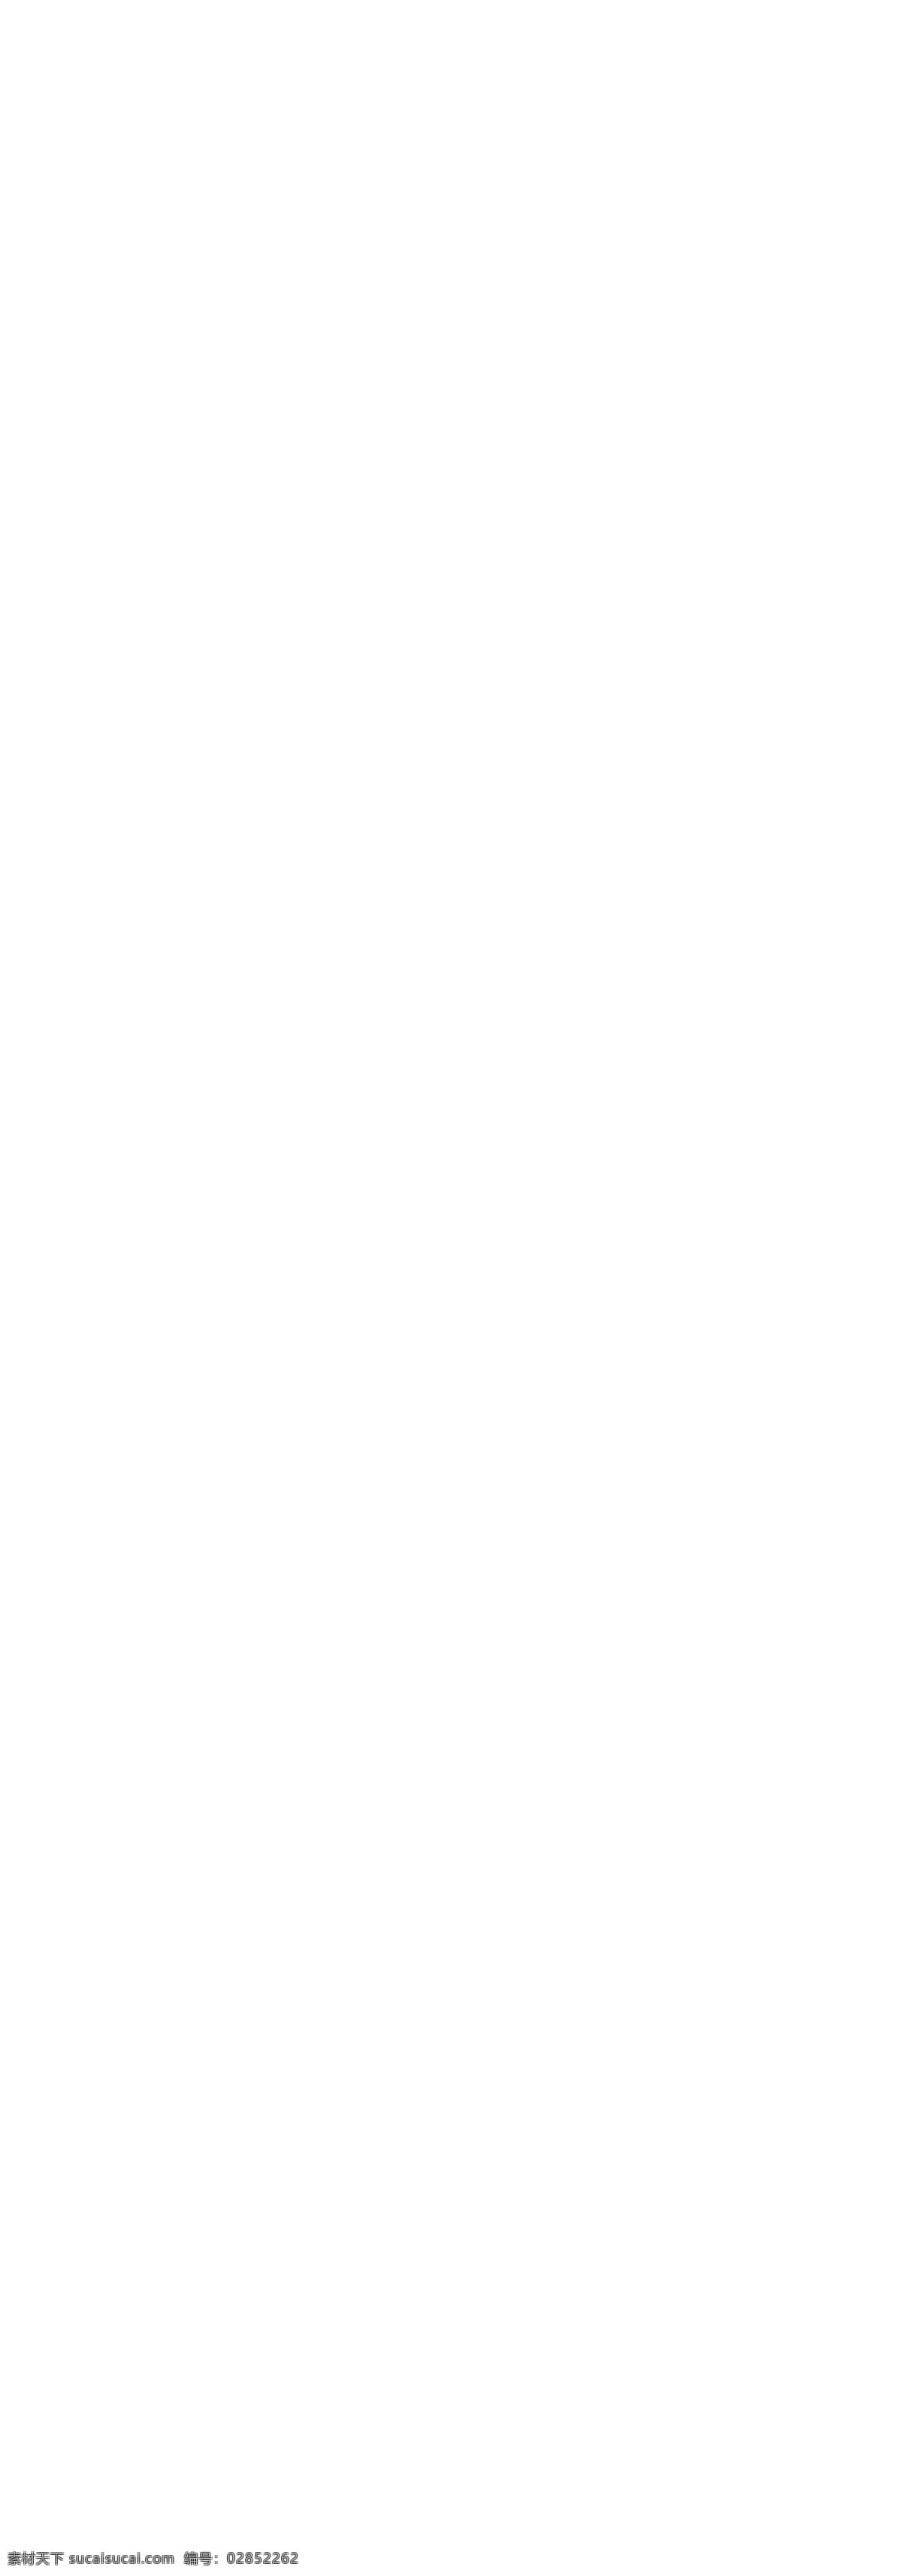 海底世界 海鸥 海洋 海洋生物 价格标签 气泡 移动电源 自由女神 电子 科技 首页 分层 森博 官方 旗舰店 黄金立体字 世界名著 淘宝素材 淘宝店铺首页